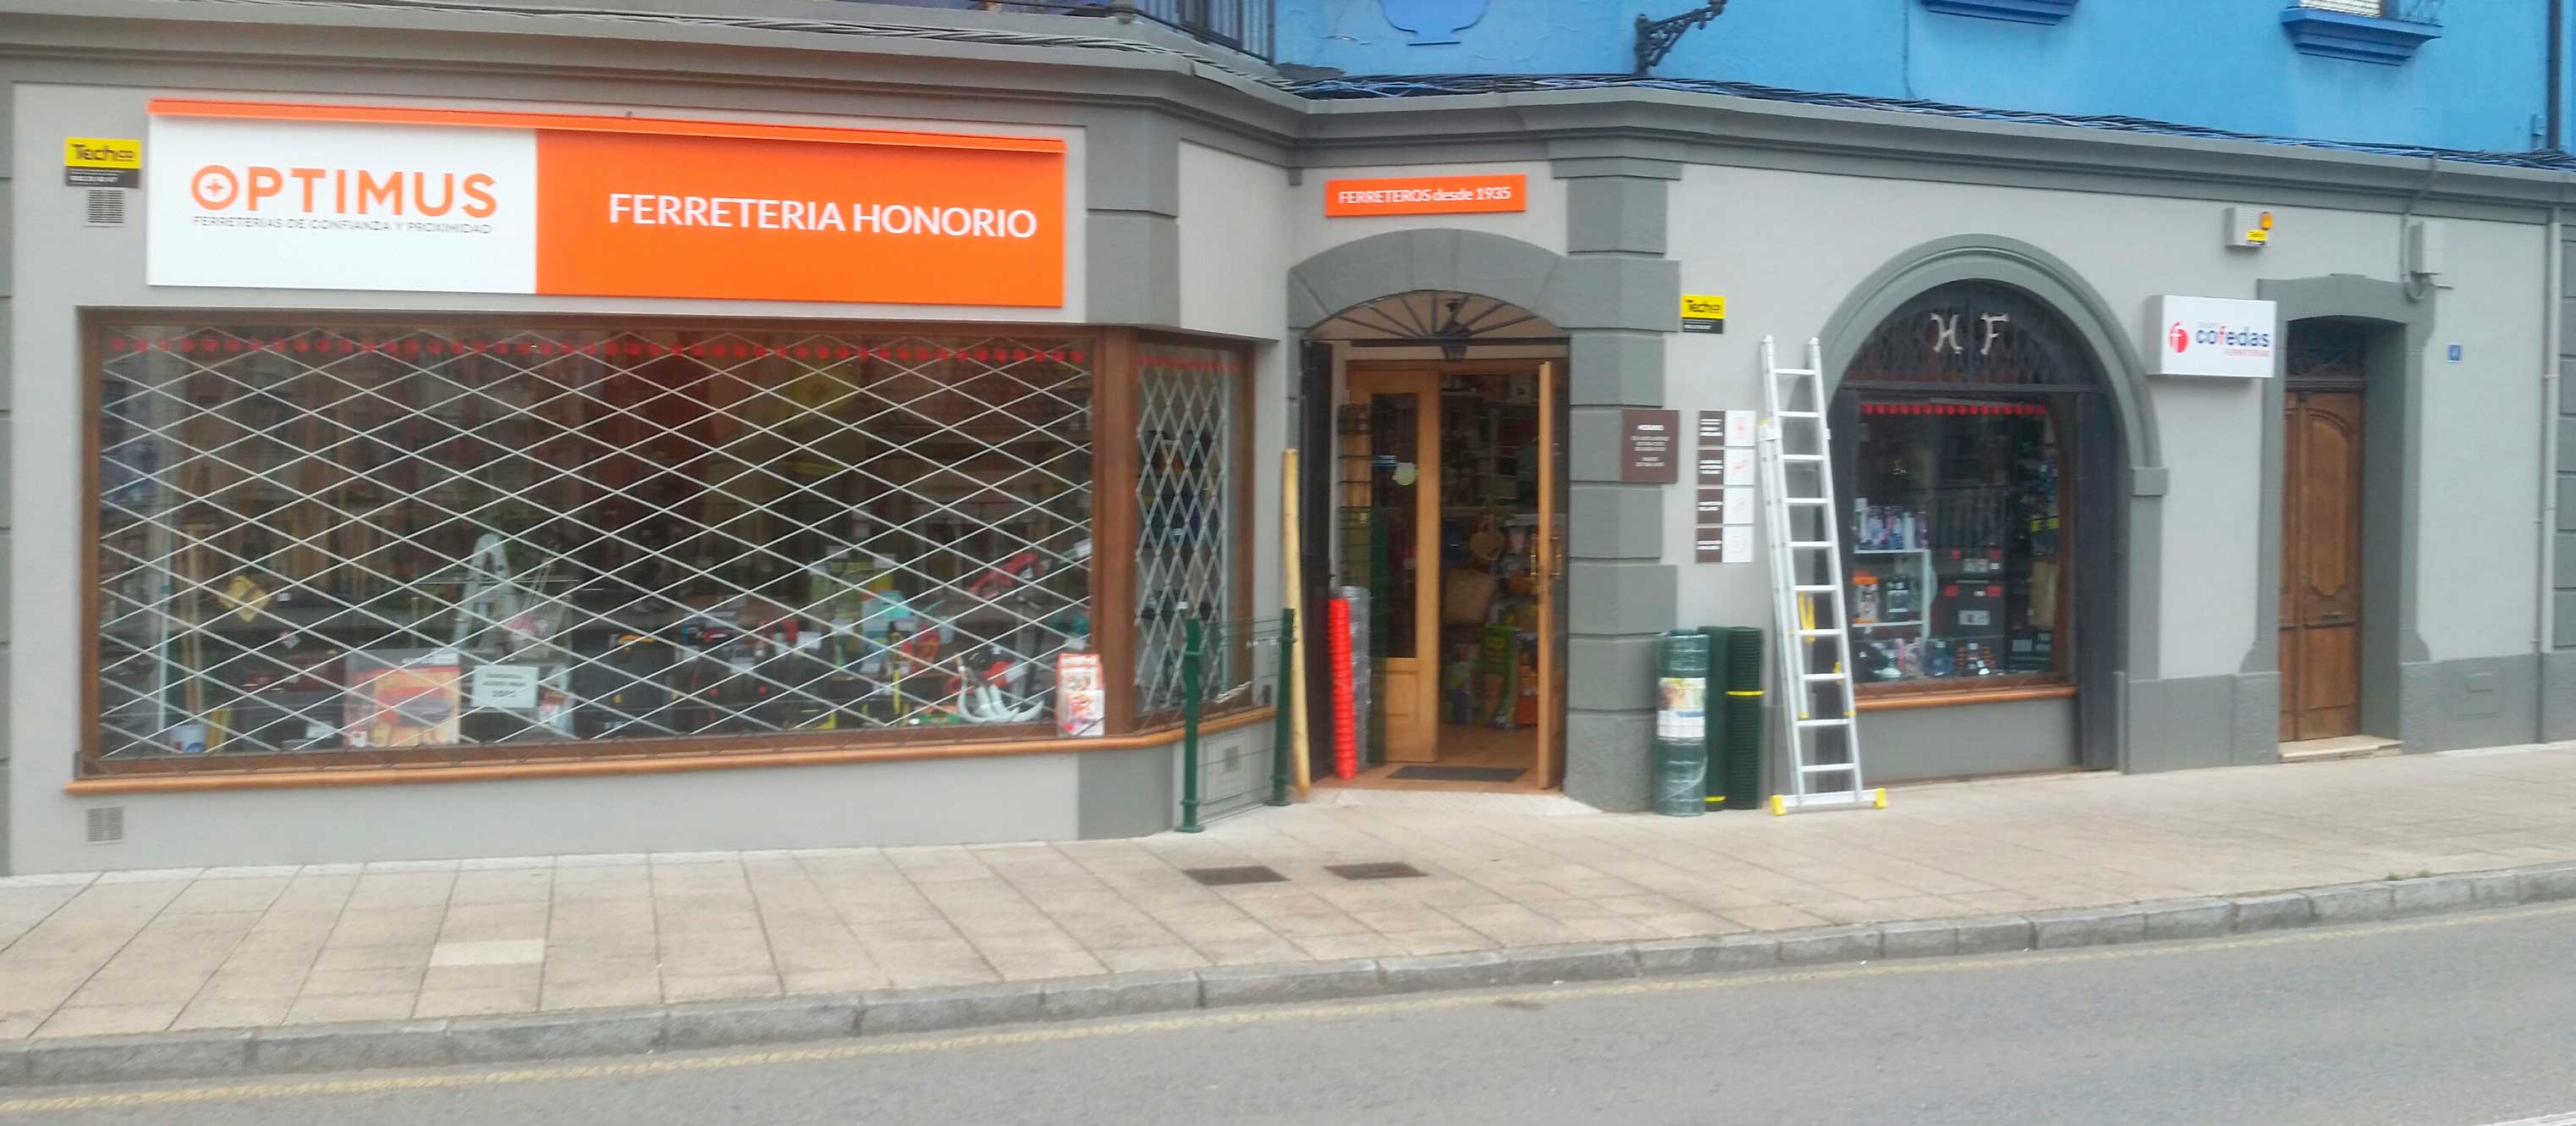 FERRETERIA HONORIO